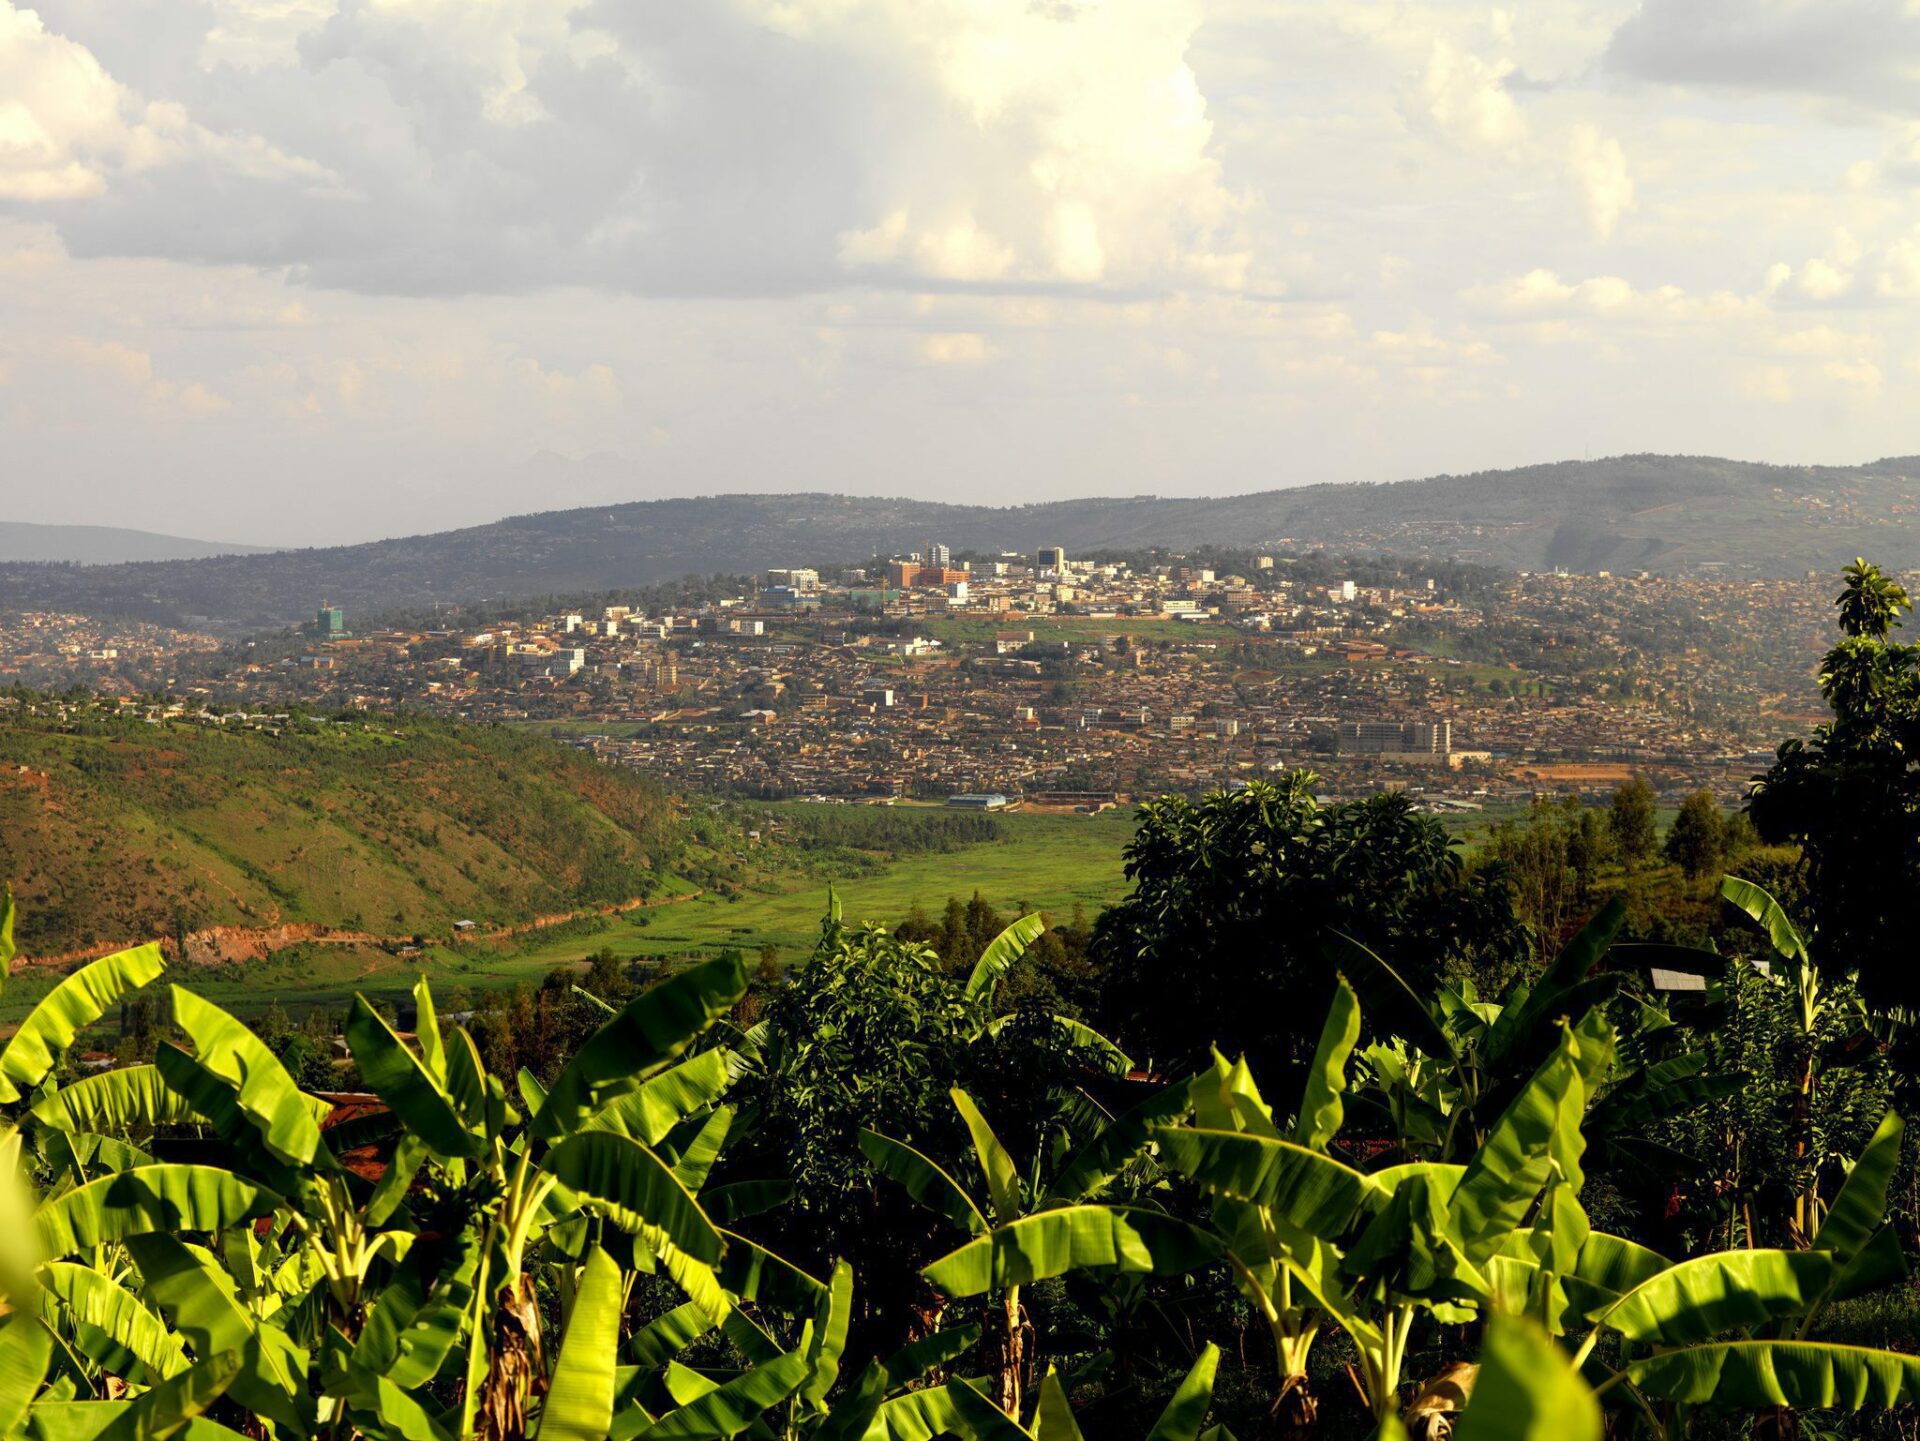 view looking at Kigali